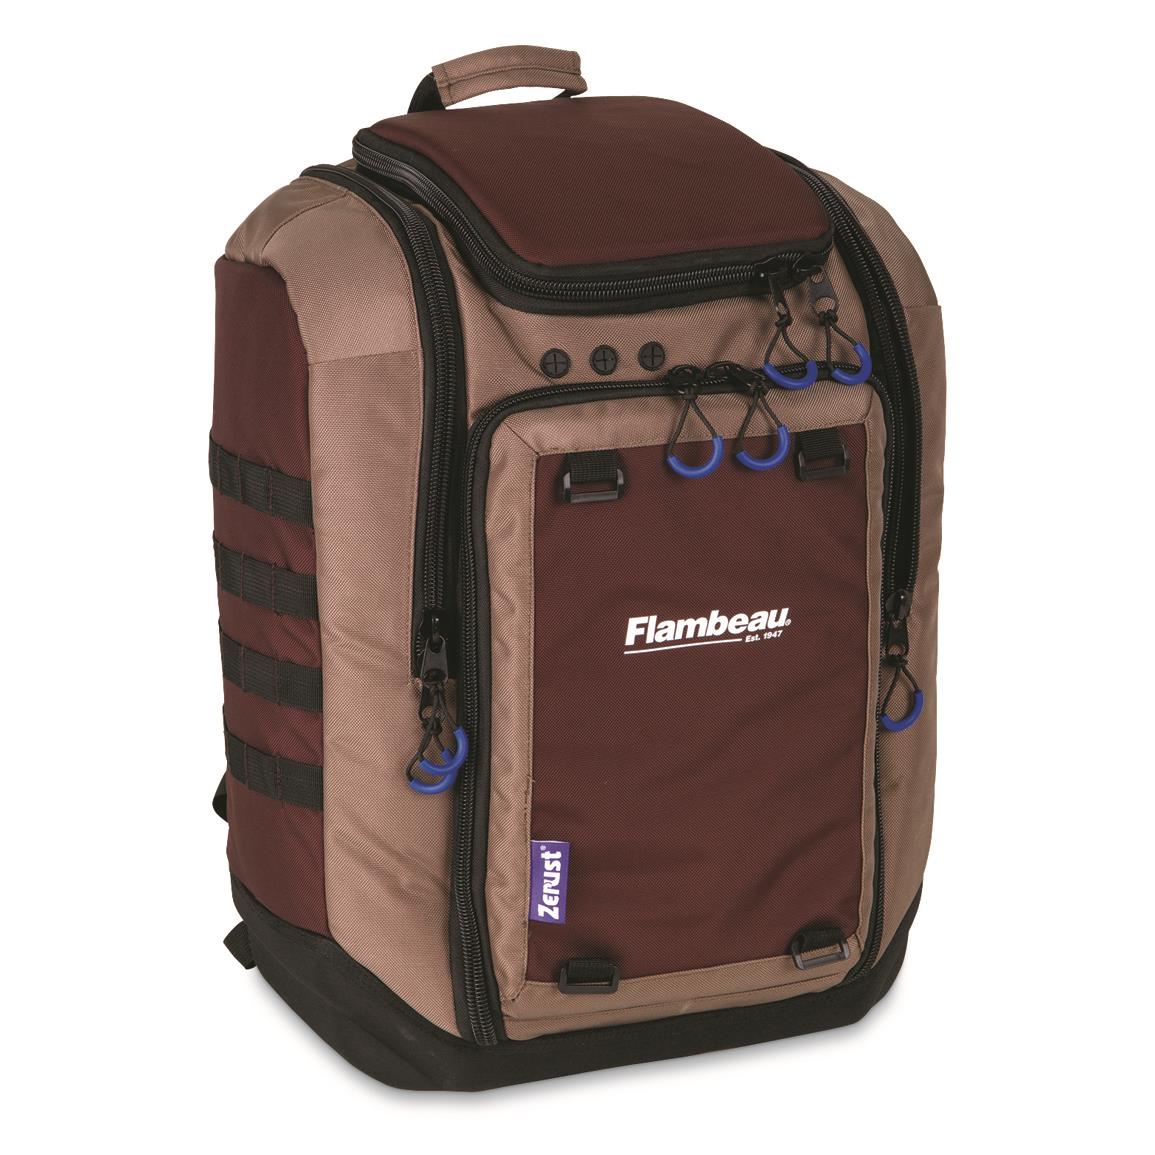 Flambeau Portage Backpack Tackle Bag